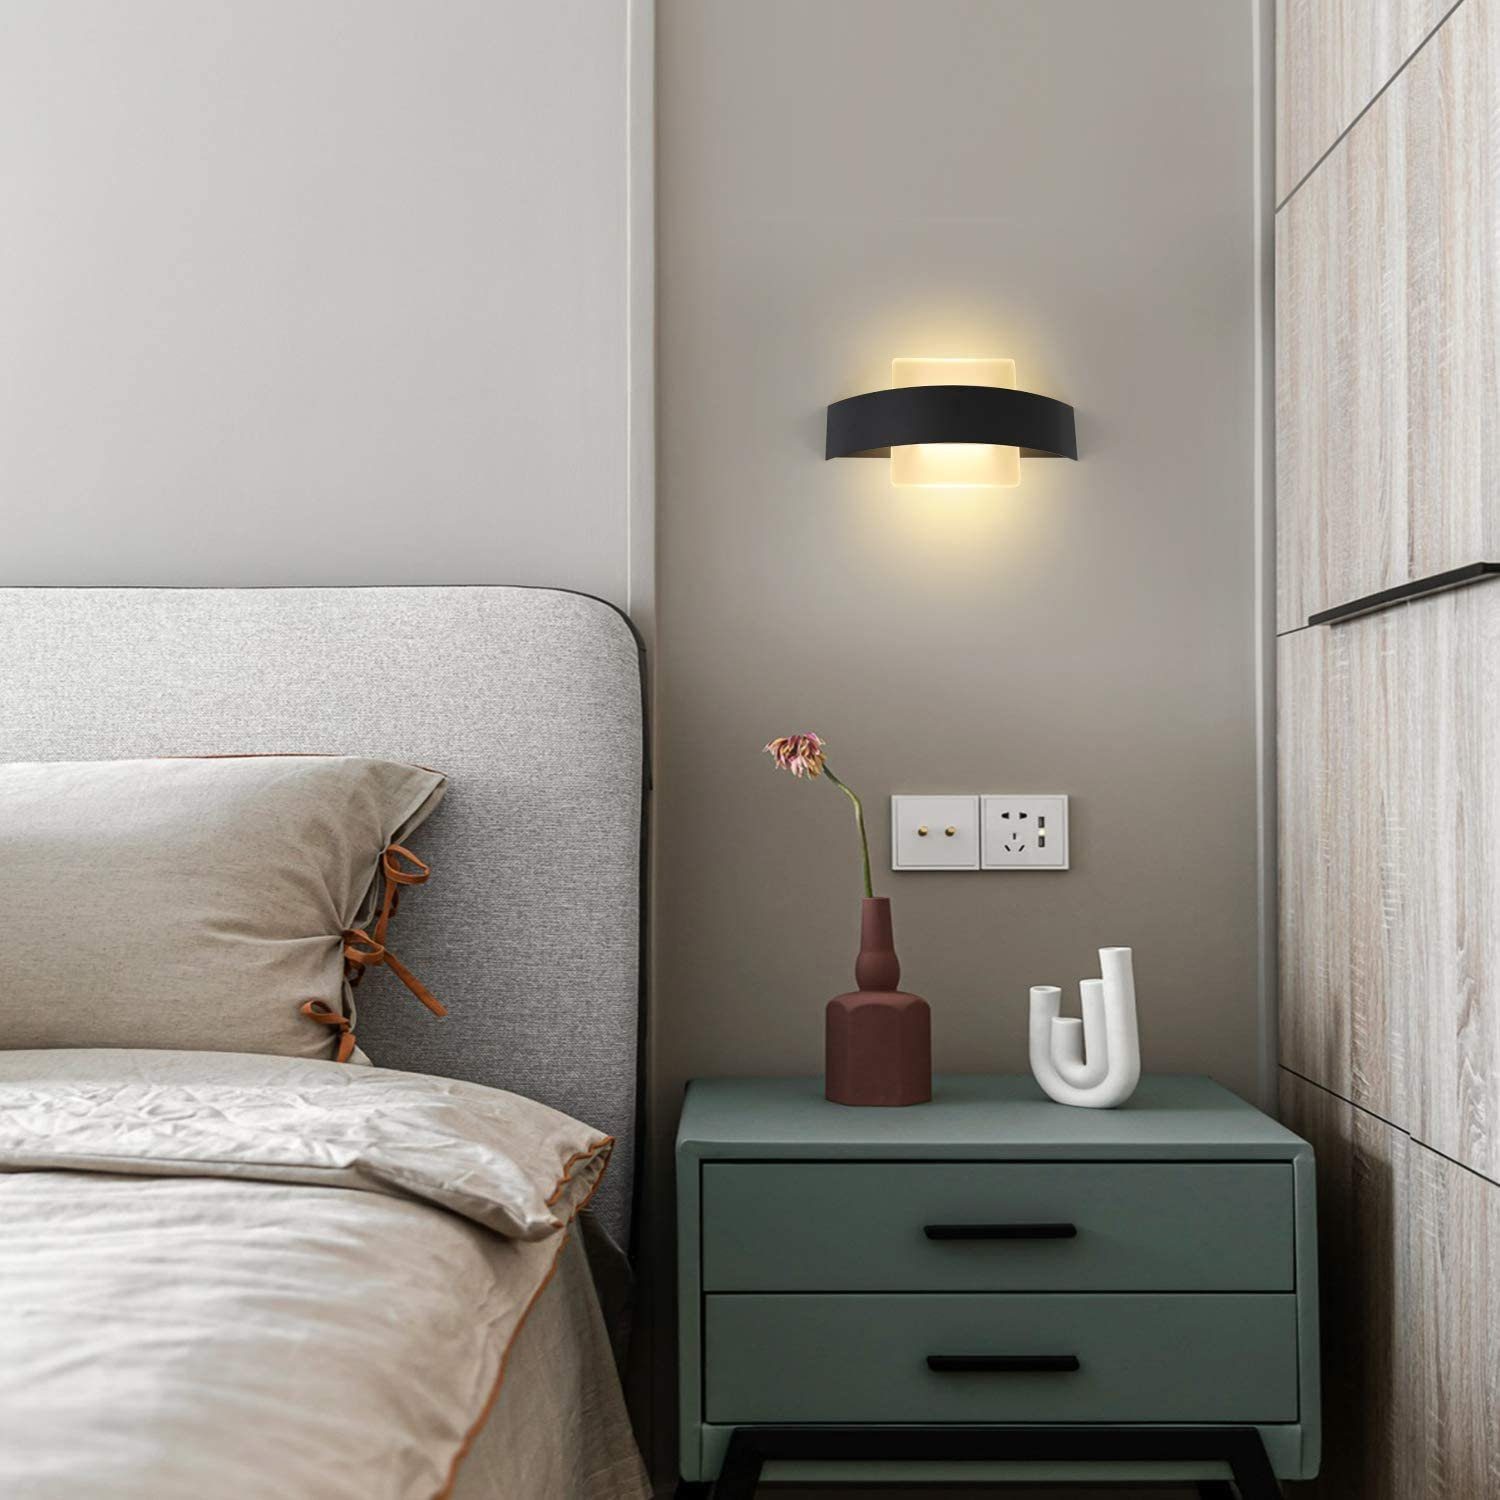 LED ZMH Innen wechselbar Wohnzimmer Bettlampe, Wandlampe 6W Modern Acryl LED Wandleuchte aus